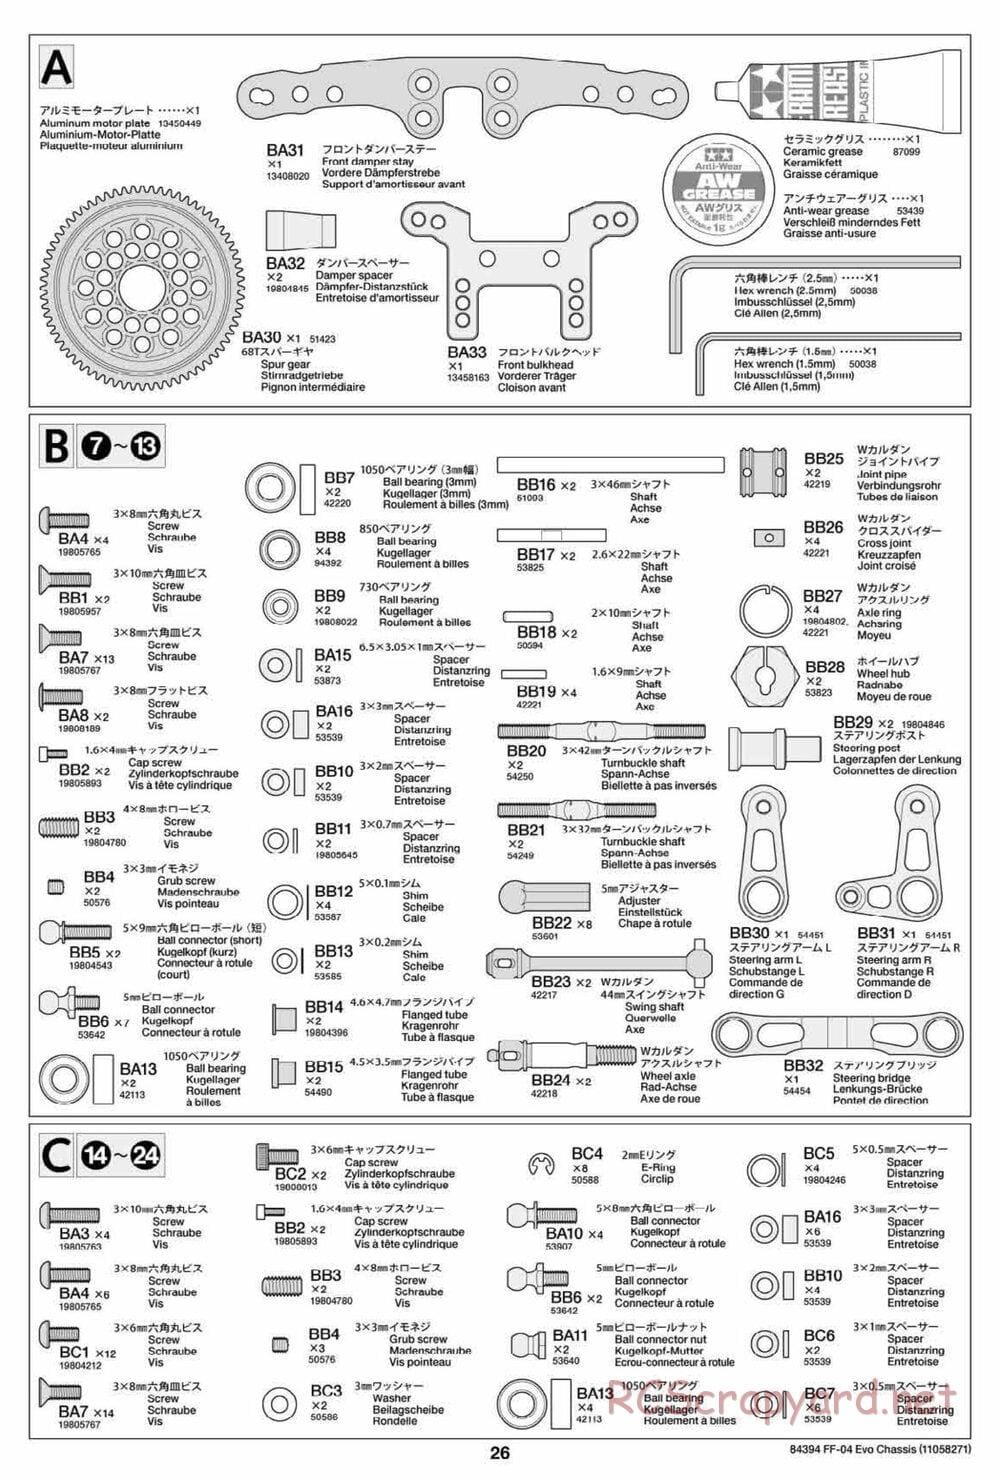 Tamiya - FF-04 Evo Chassis - Manual - Page 26